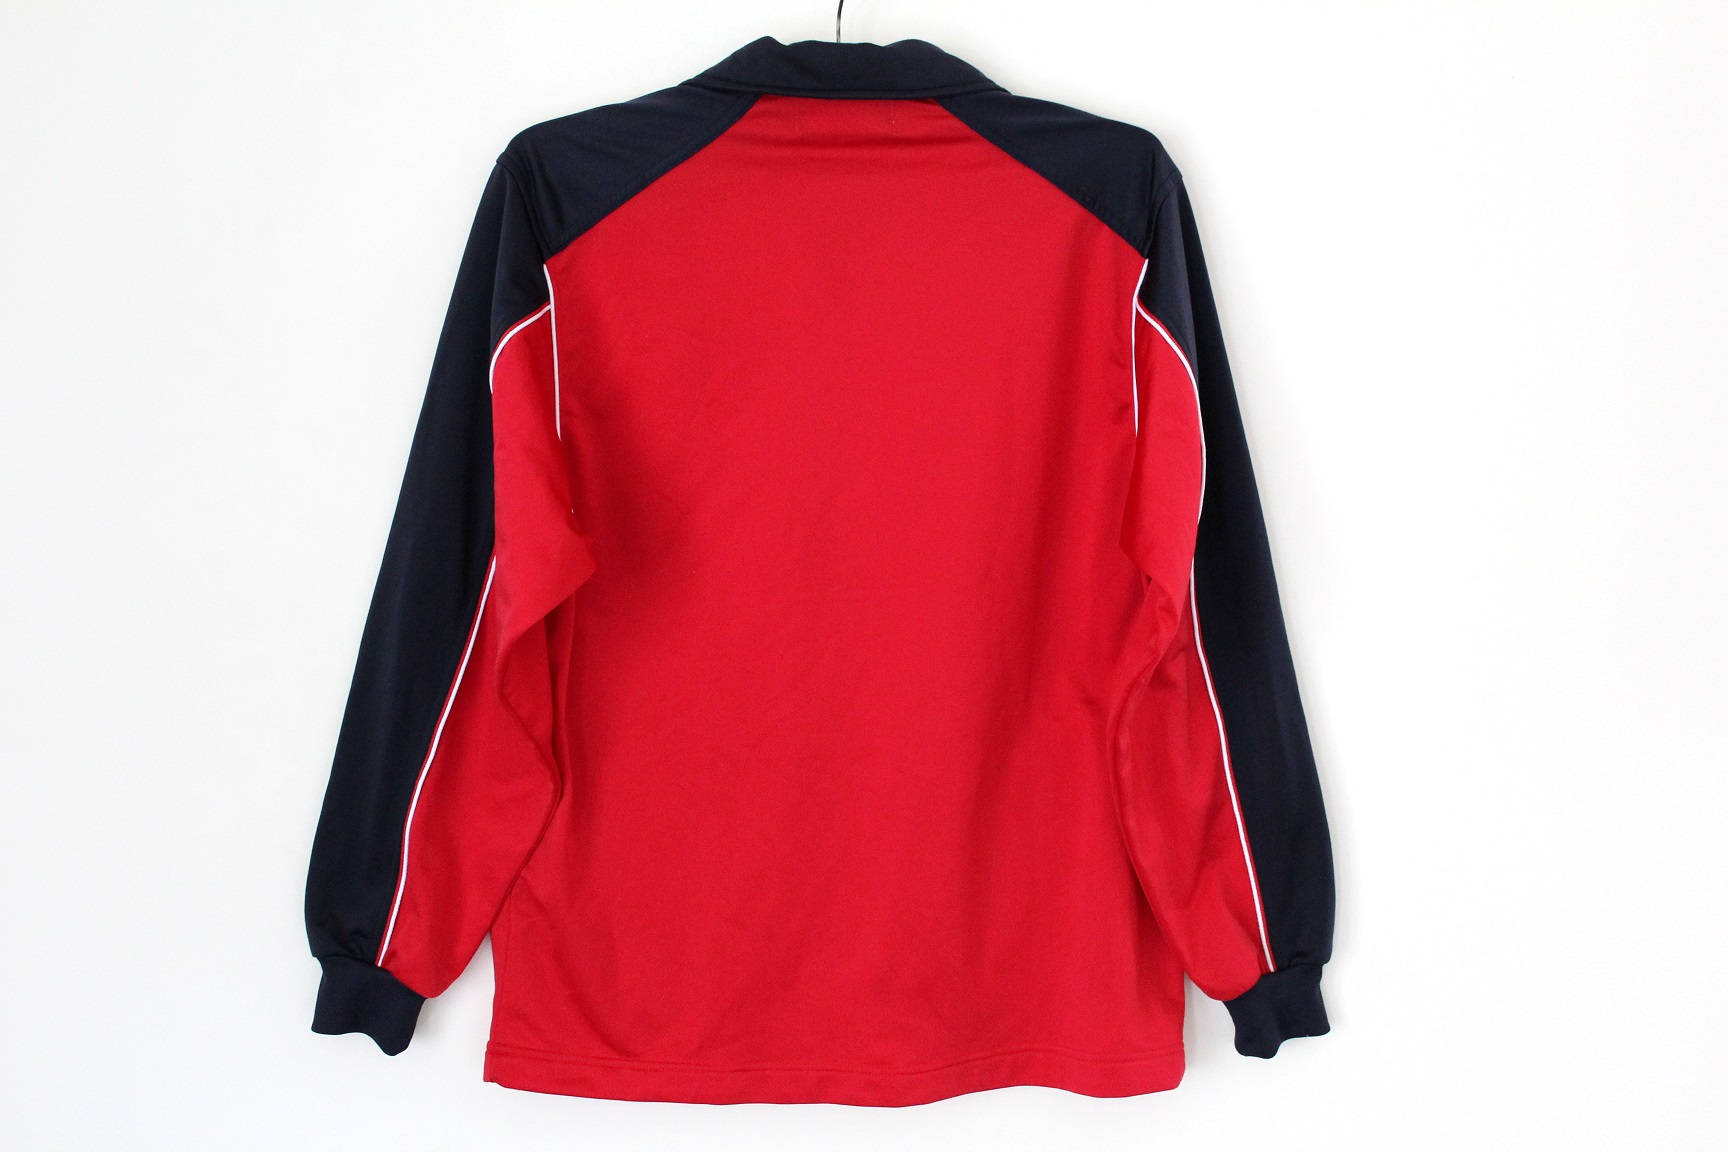 Vintage Kappa Jacket Red Kappa Tracksuit Kappa Track Jacket | Etsy